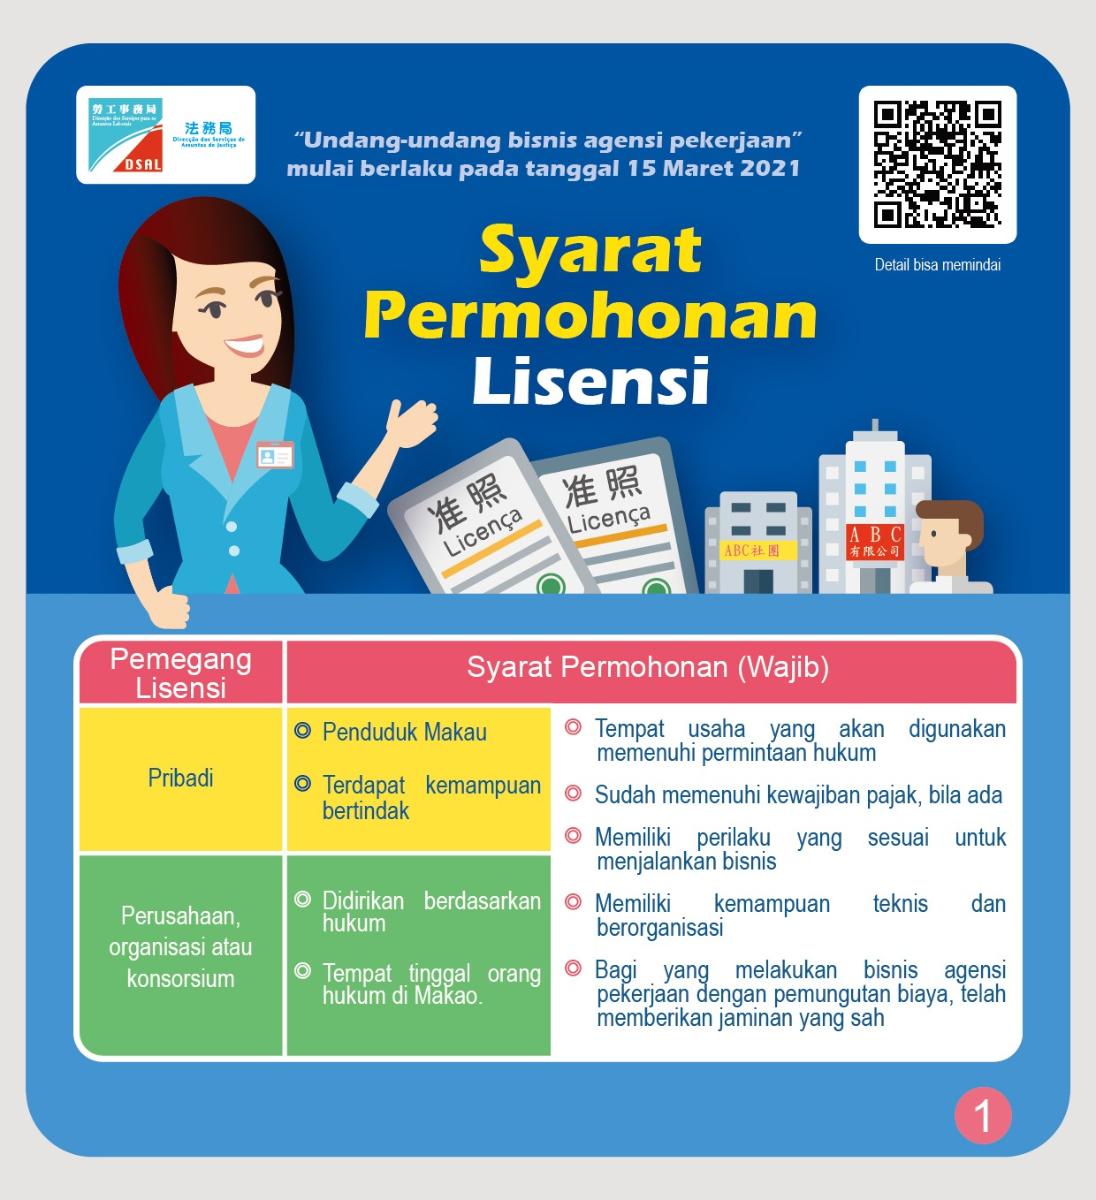 職業介紹所業務准照的申請和註銷 印尼文